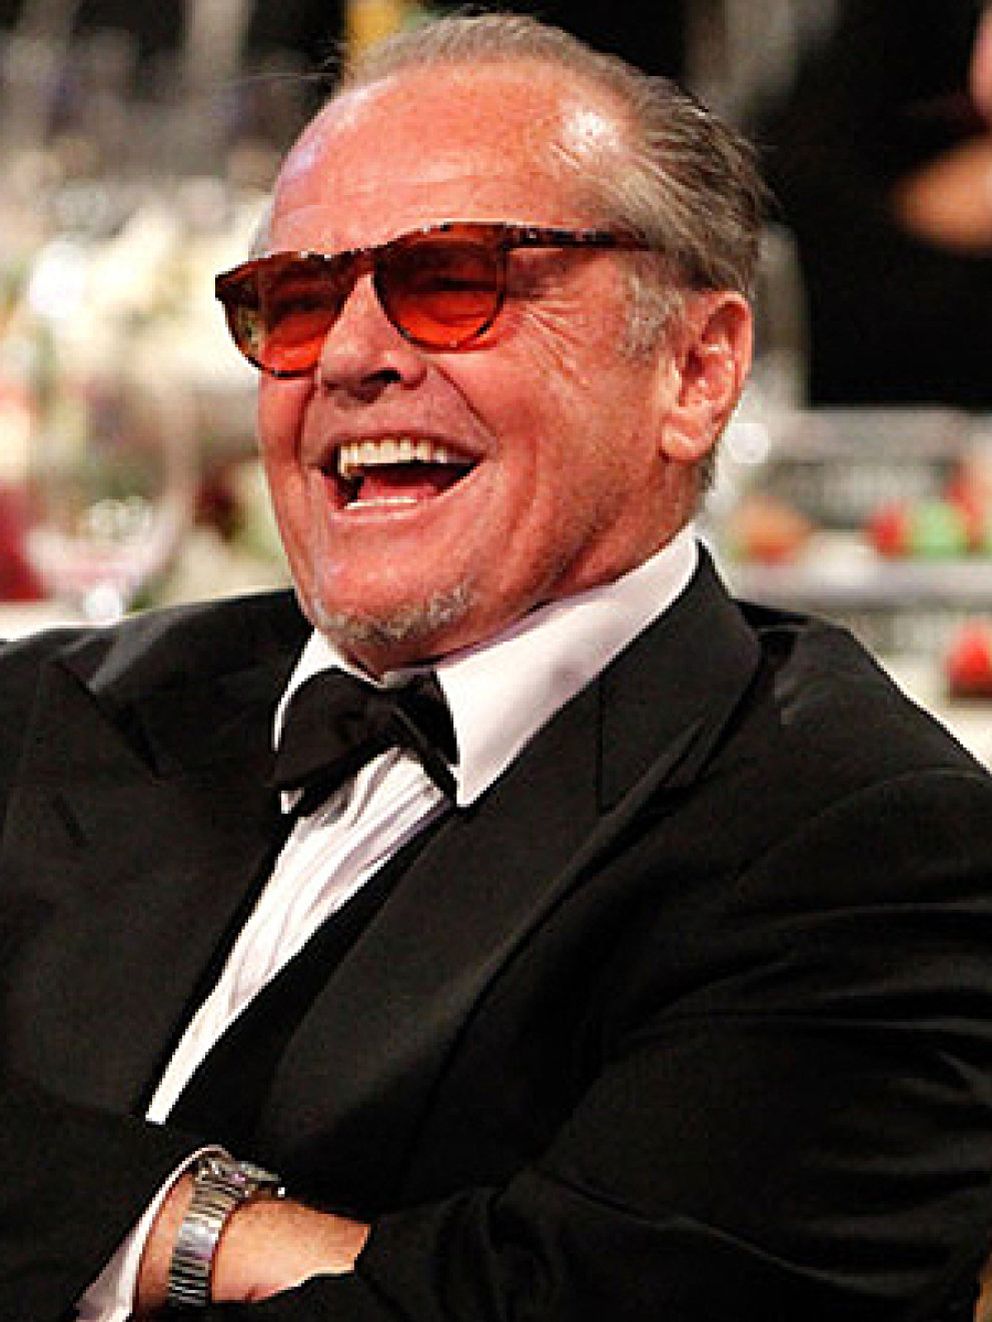 Foto: Suplantan la identidad de Jack Nicholson para abrir cuentas bancarias